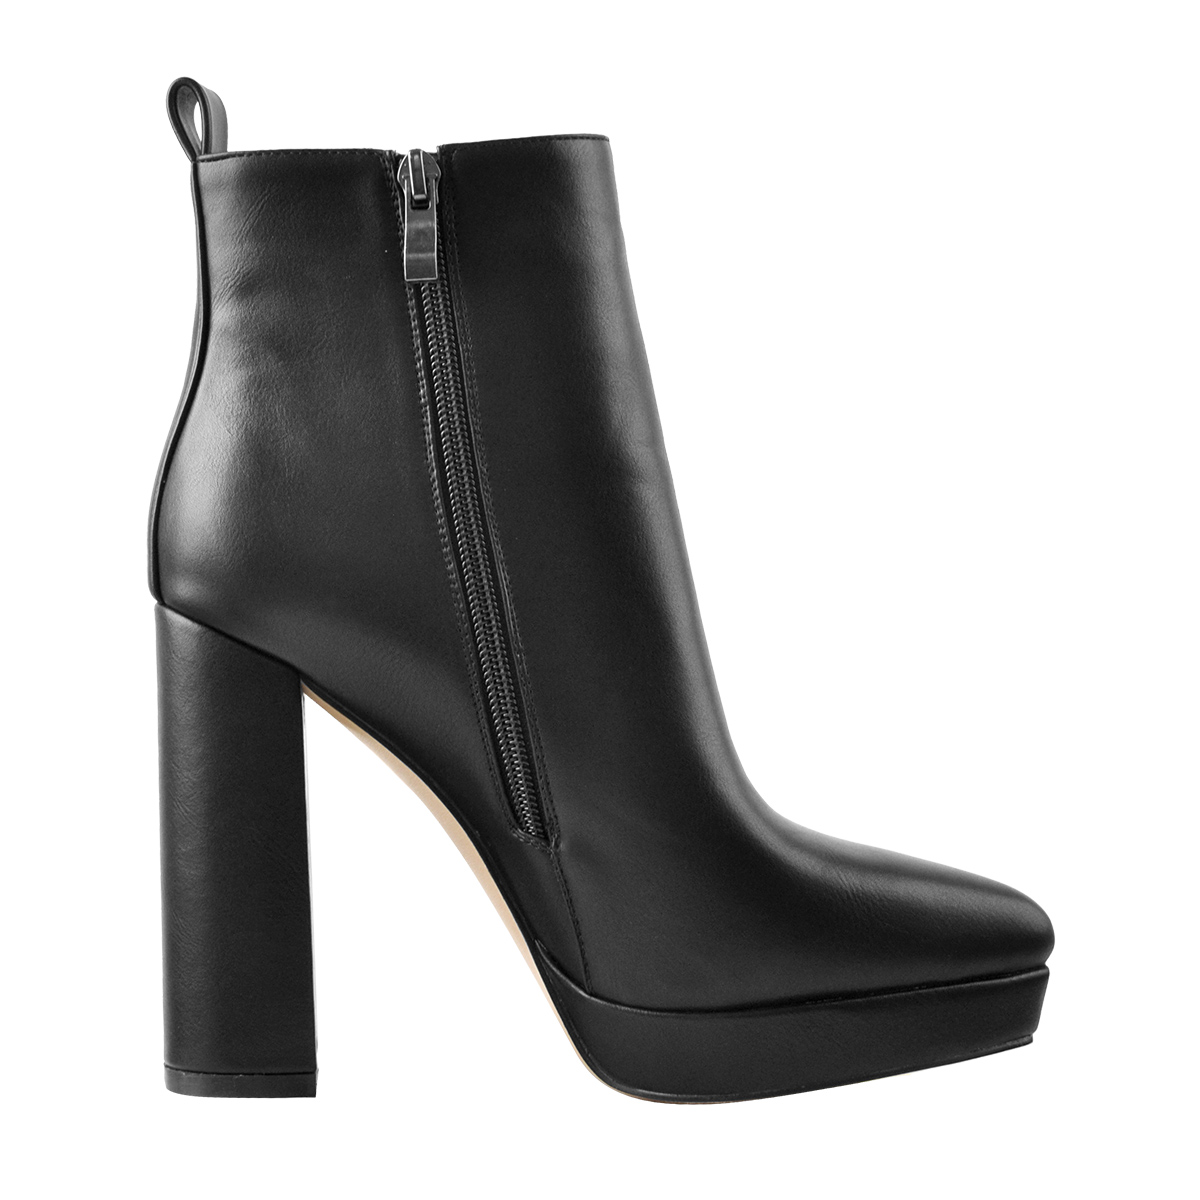 Onlymaker Women's Side zipper Ankle Boots Platform High Block Heels ...